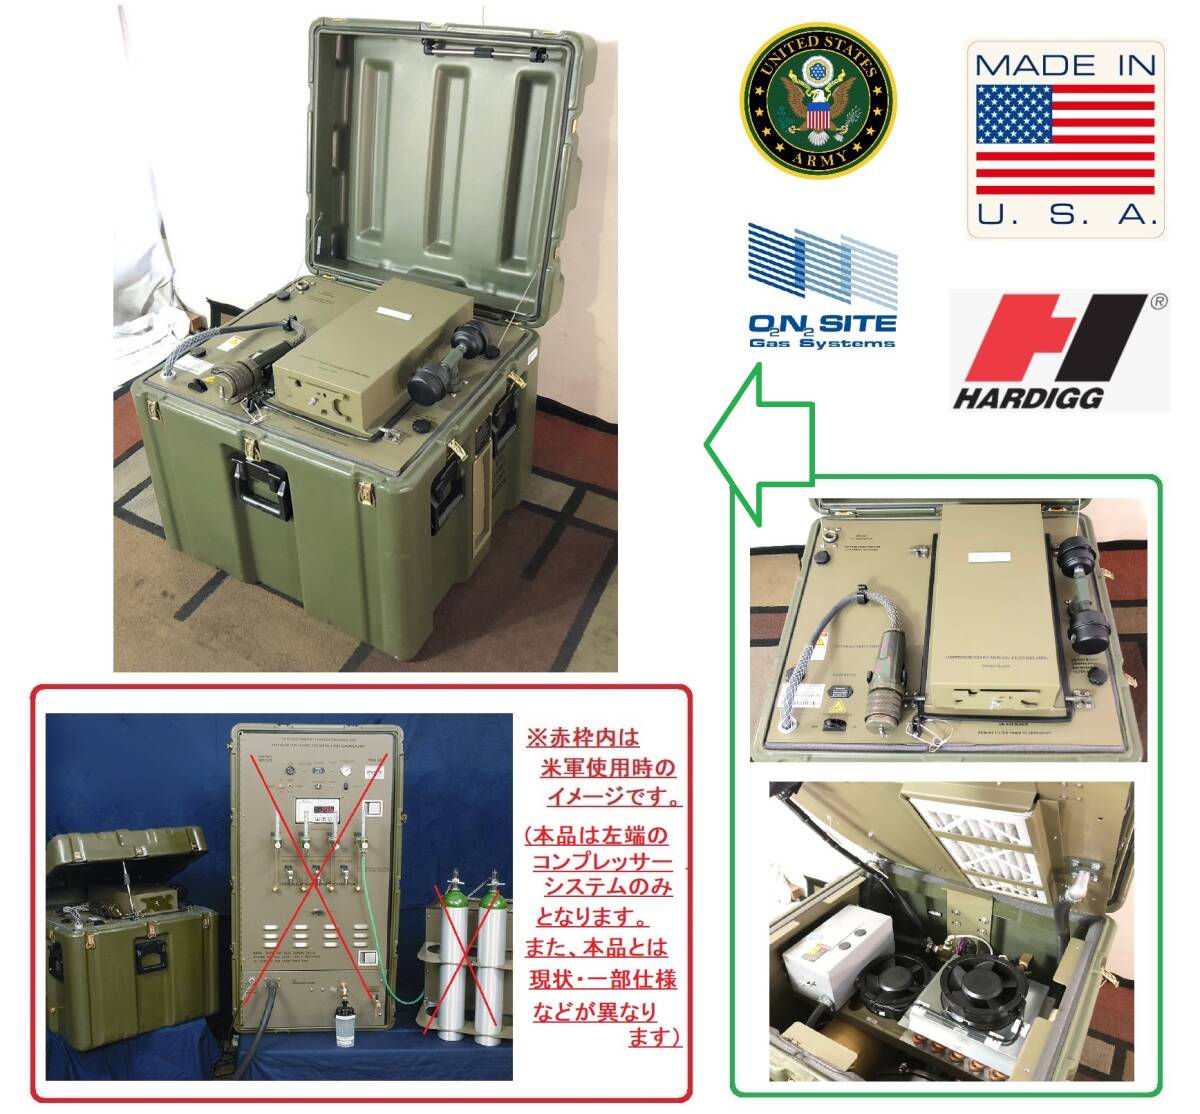 [ вооруженные силы США сброшенный товар ] воздушный компрессор портативный кислород генератор для компрессор POGS-33 US-ARMY(C)*BC20LM-N#24